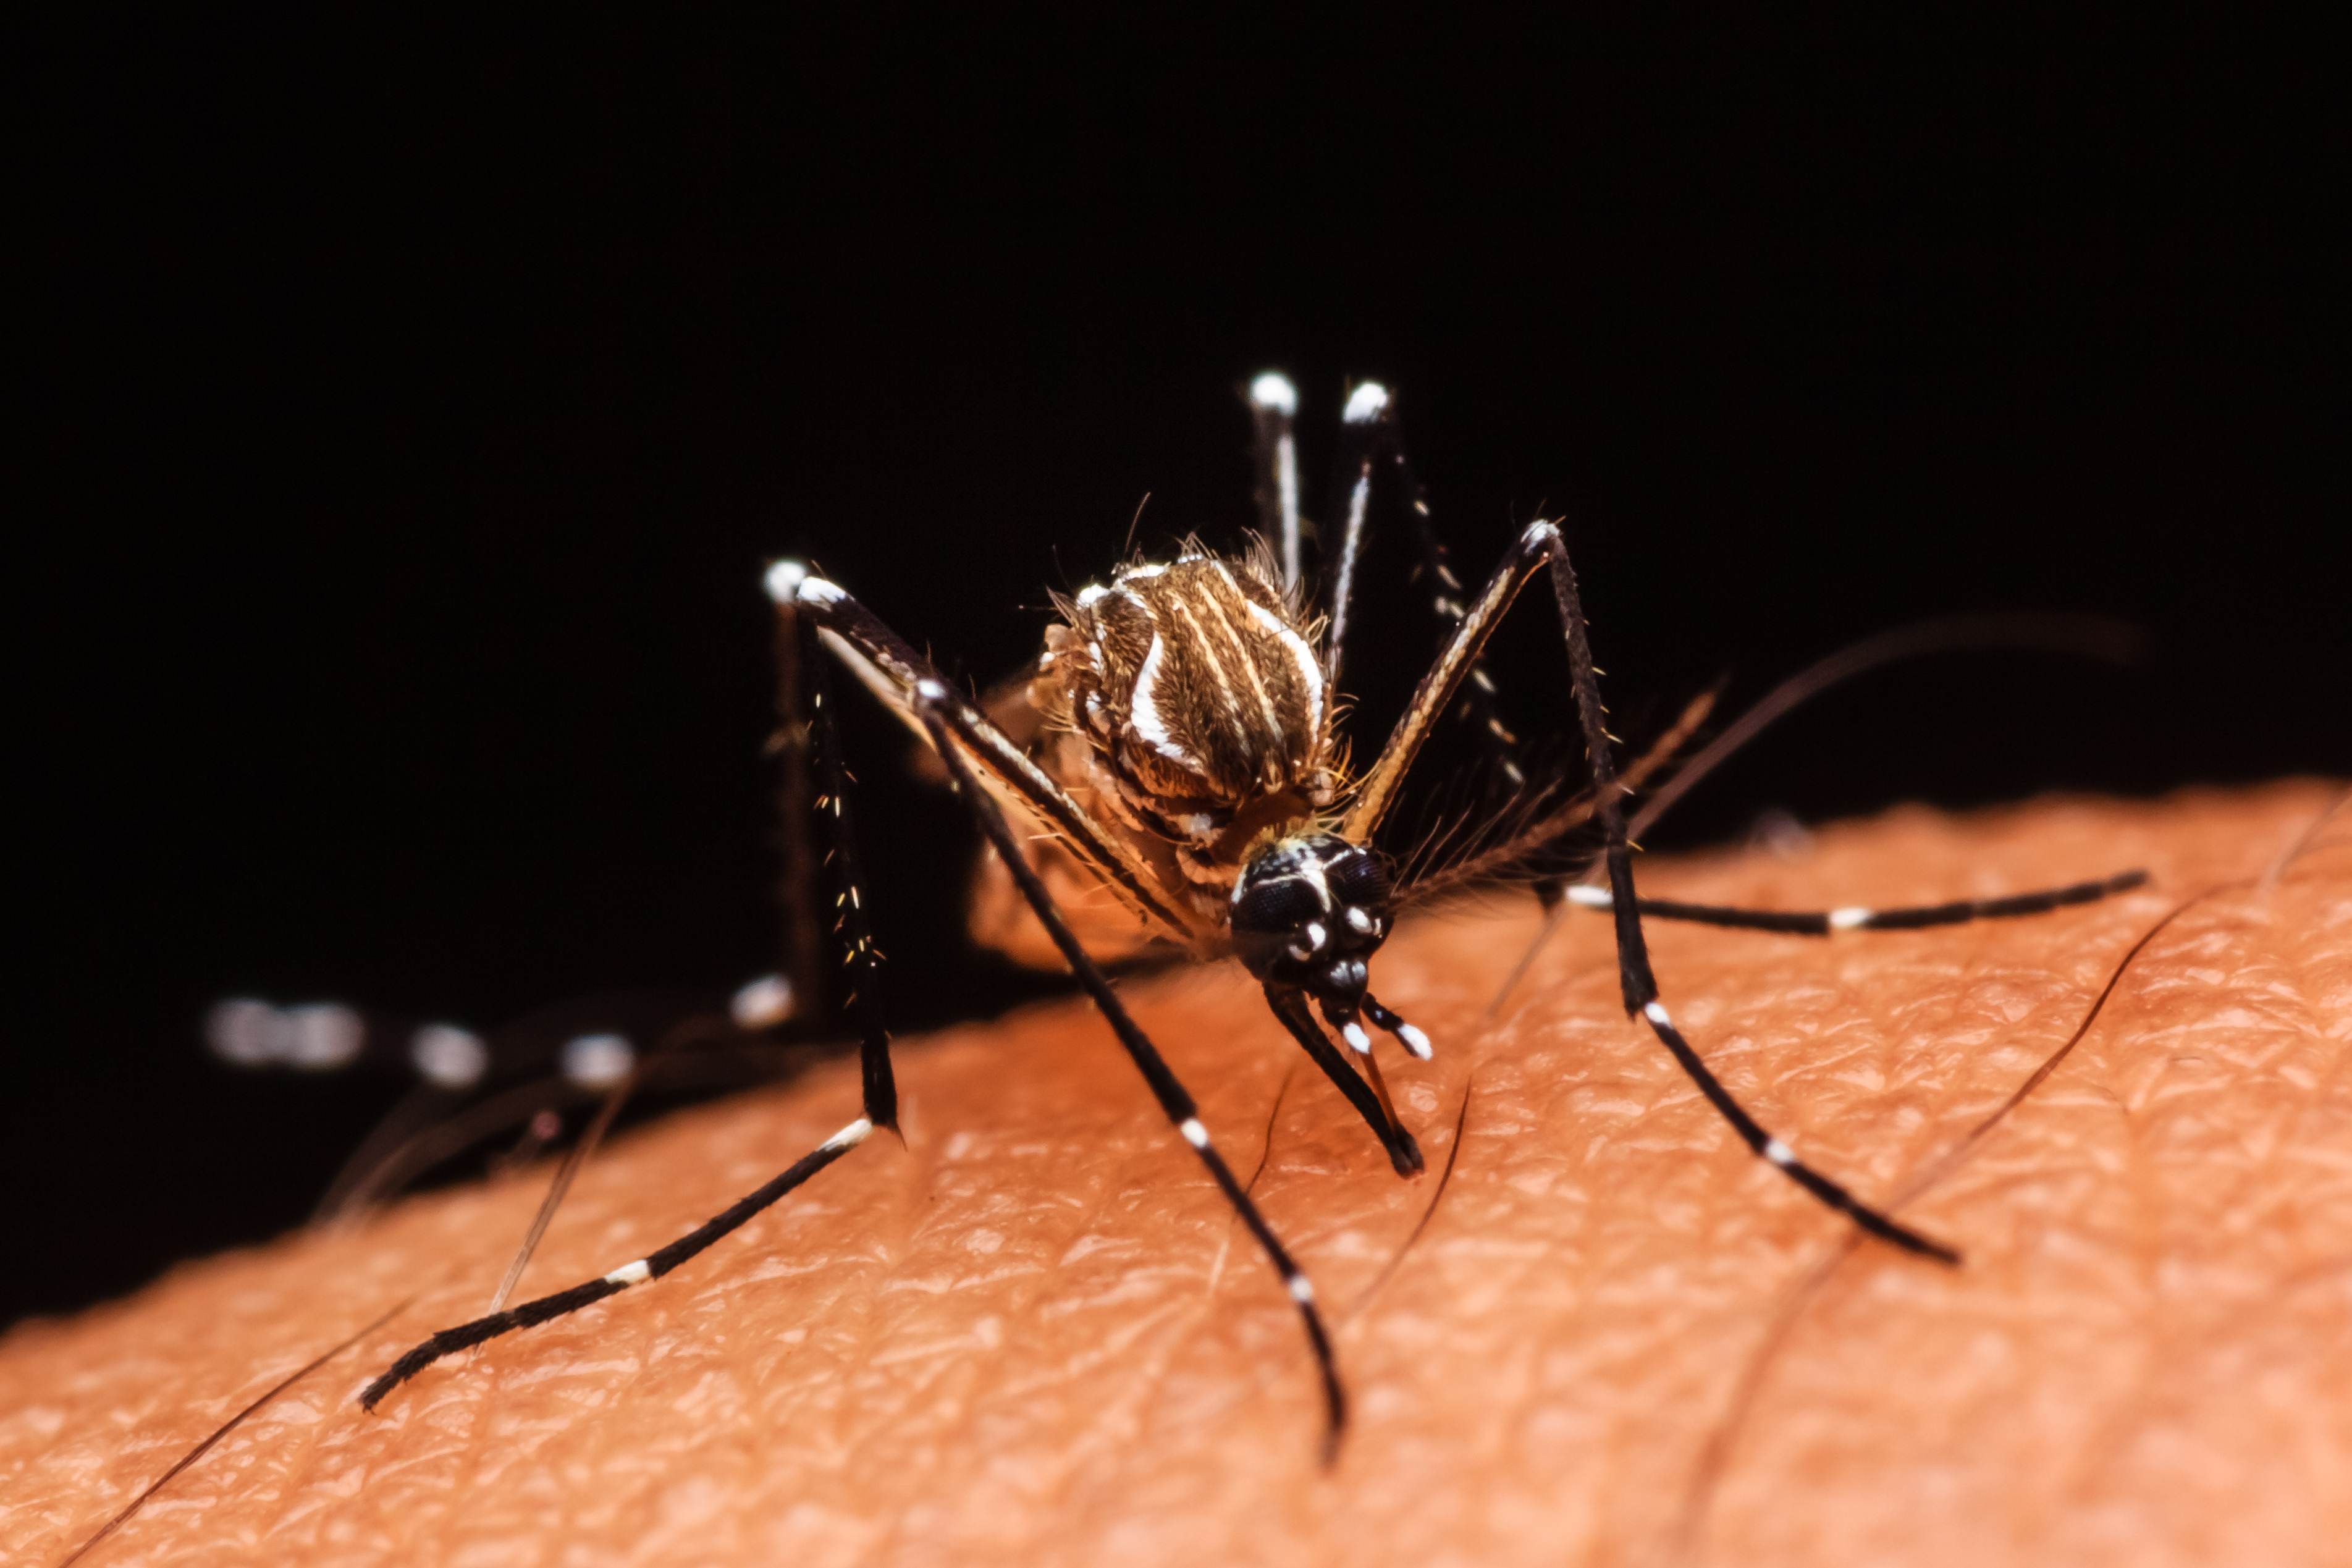     Dengue : une tendance à la baisse qui ne doit pas faire baisser la garde

